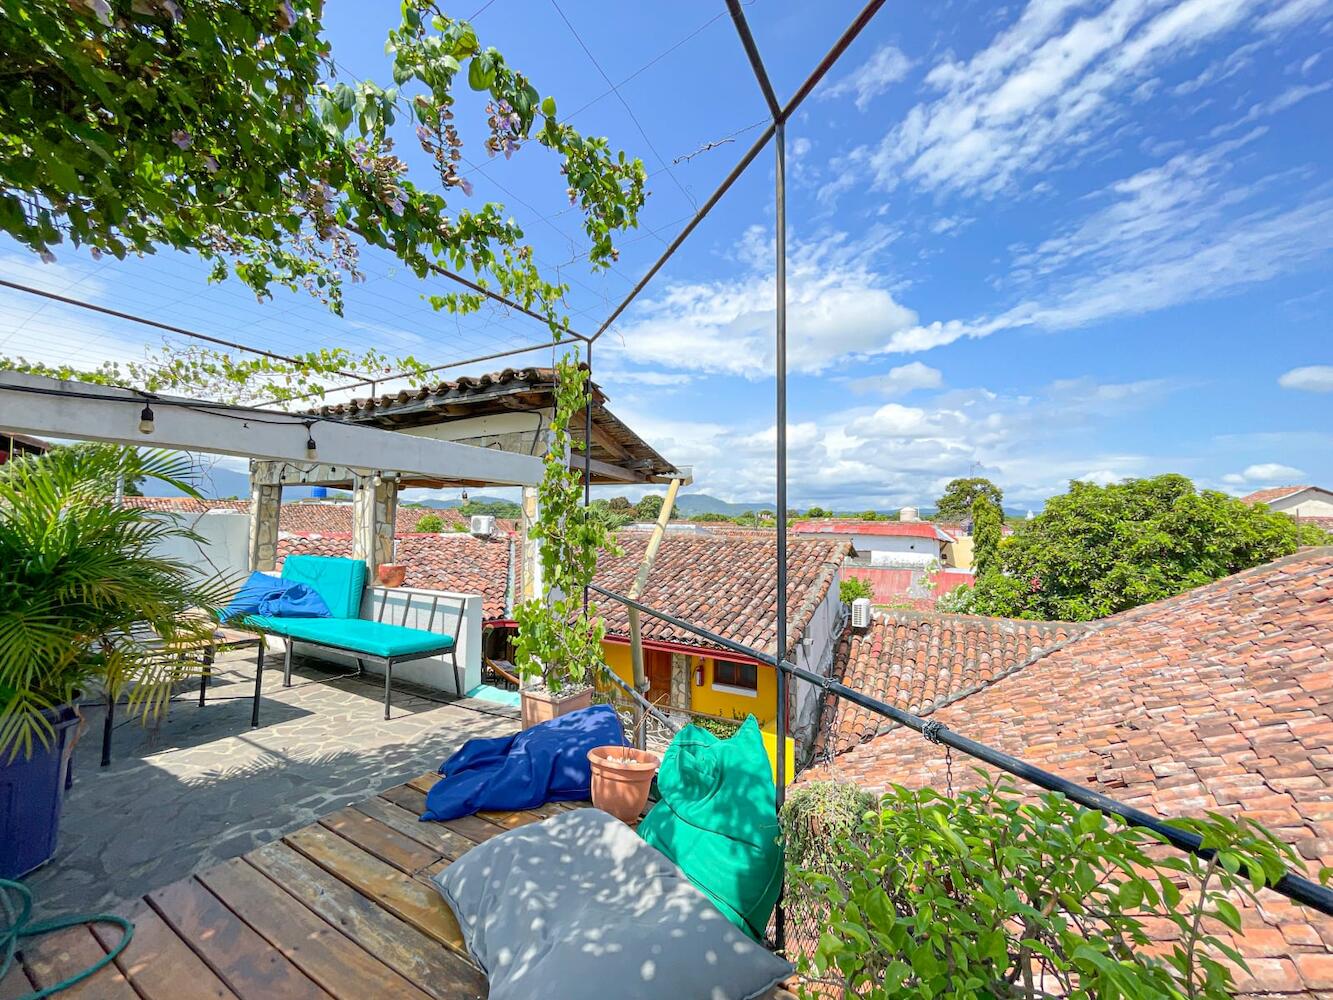 Hostel Oasis Granada in Granada - Prices 2020 (Compare ...